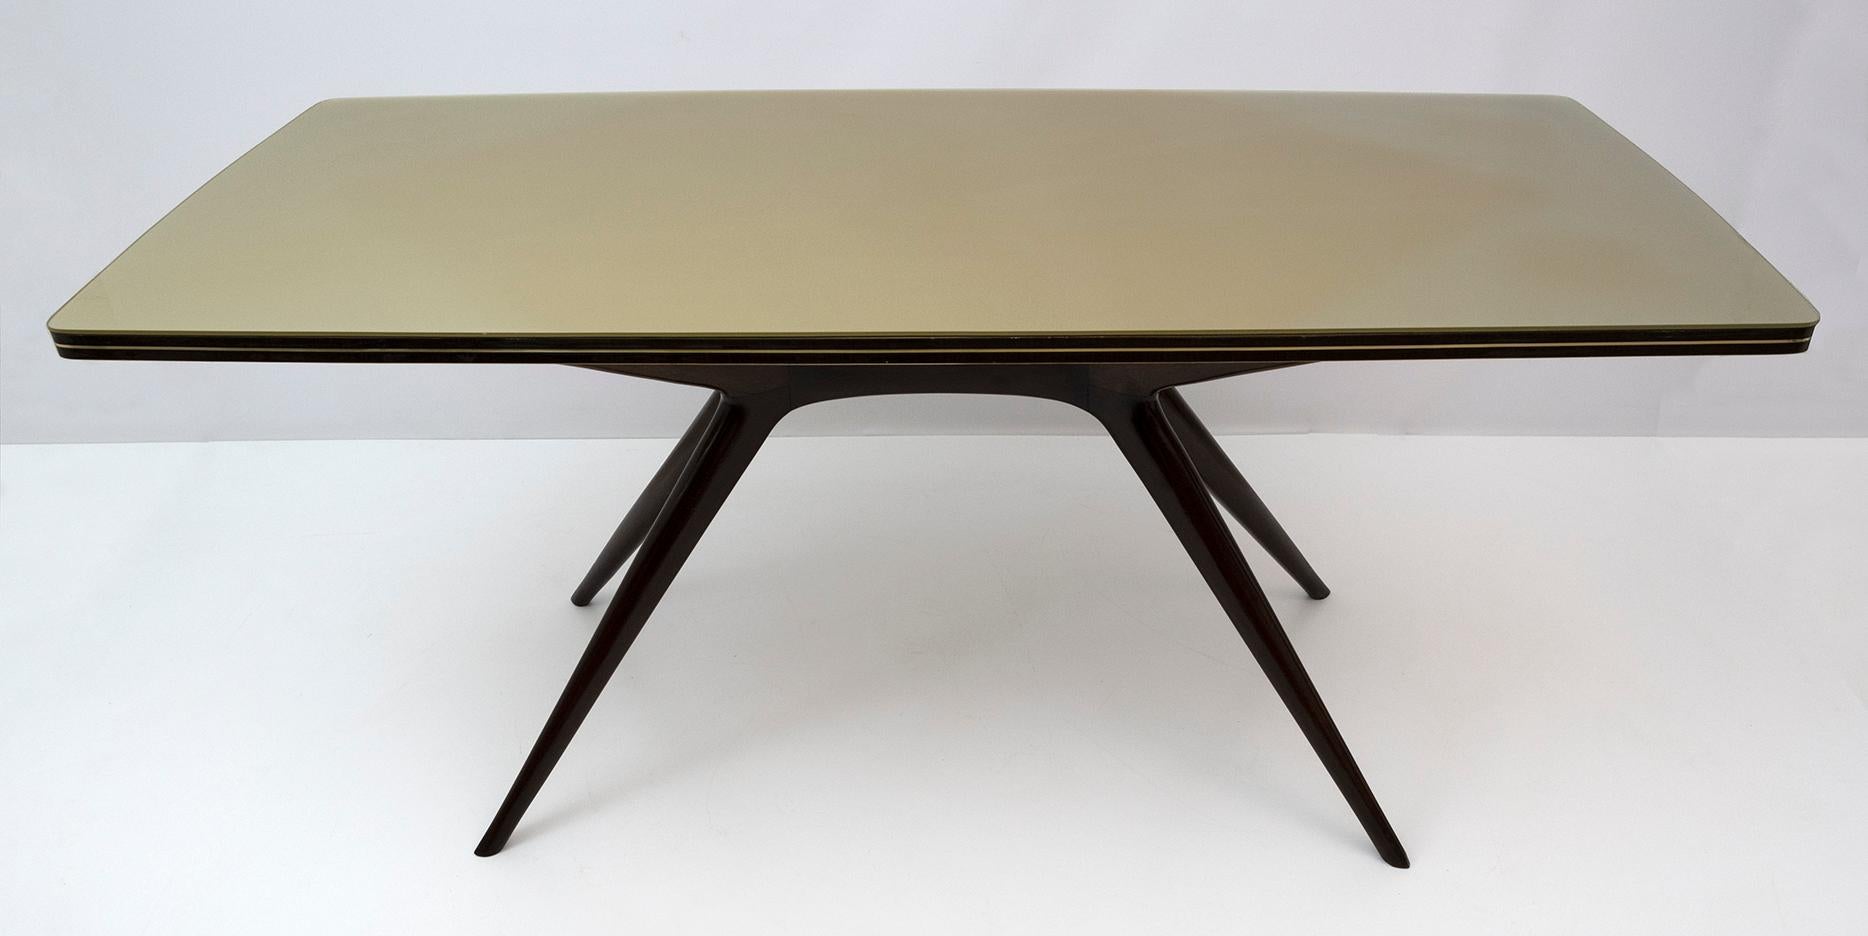 A retenir : table de salle à manger en noyer foncé et plateau en verre bronzé italien dans le style Ico Parisi des années 50. La table a une belle forme sculpturale. La table a été polie à la gomme-laque en conservant la patine d'origine. Le plateau